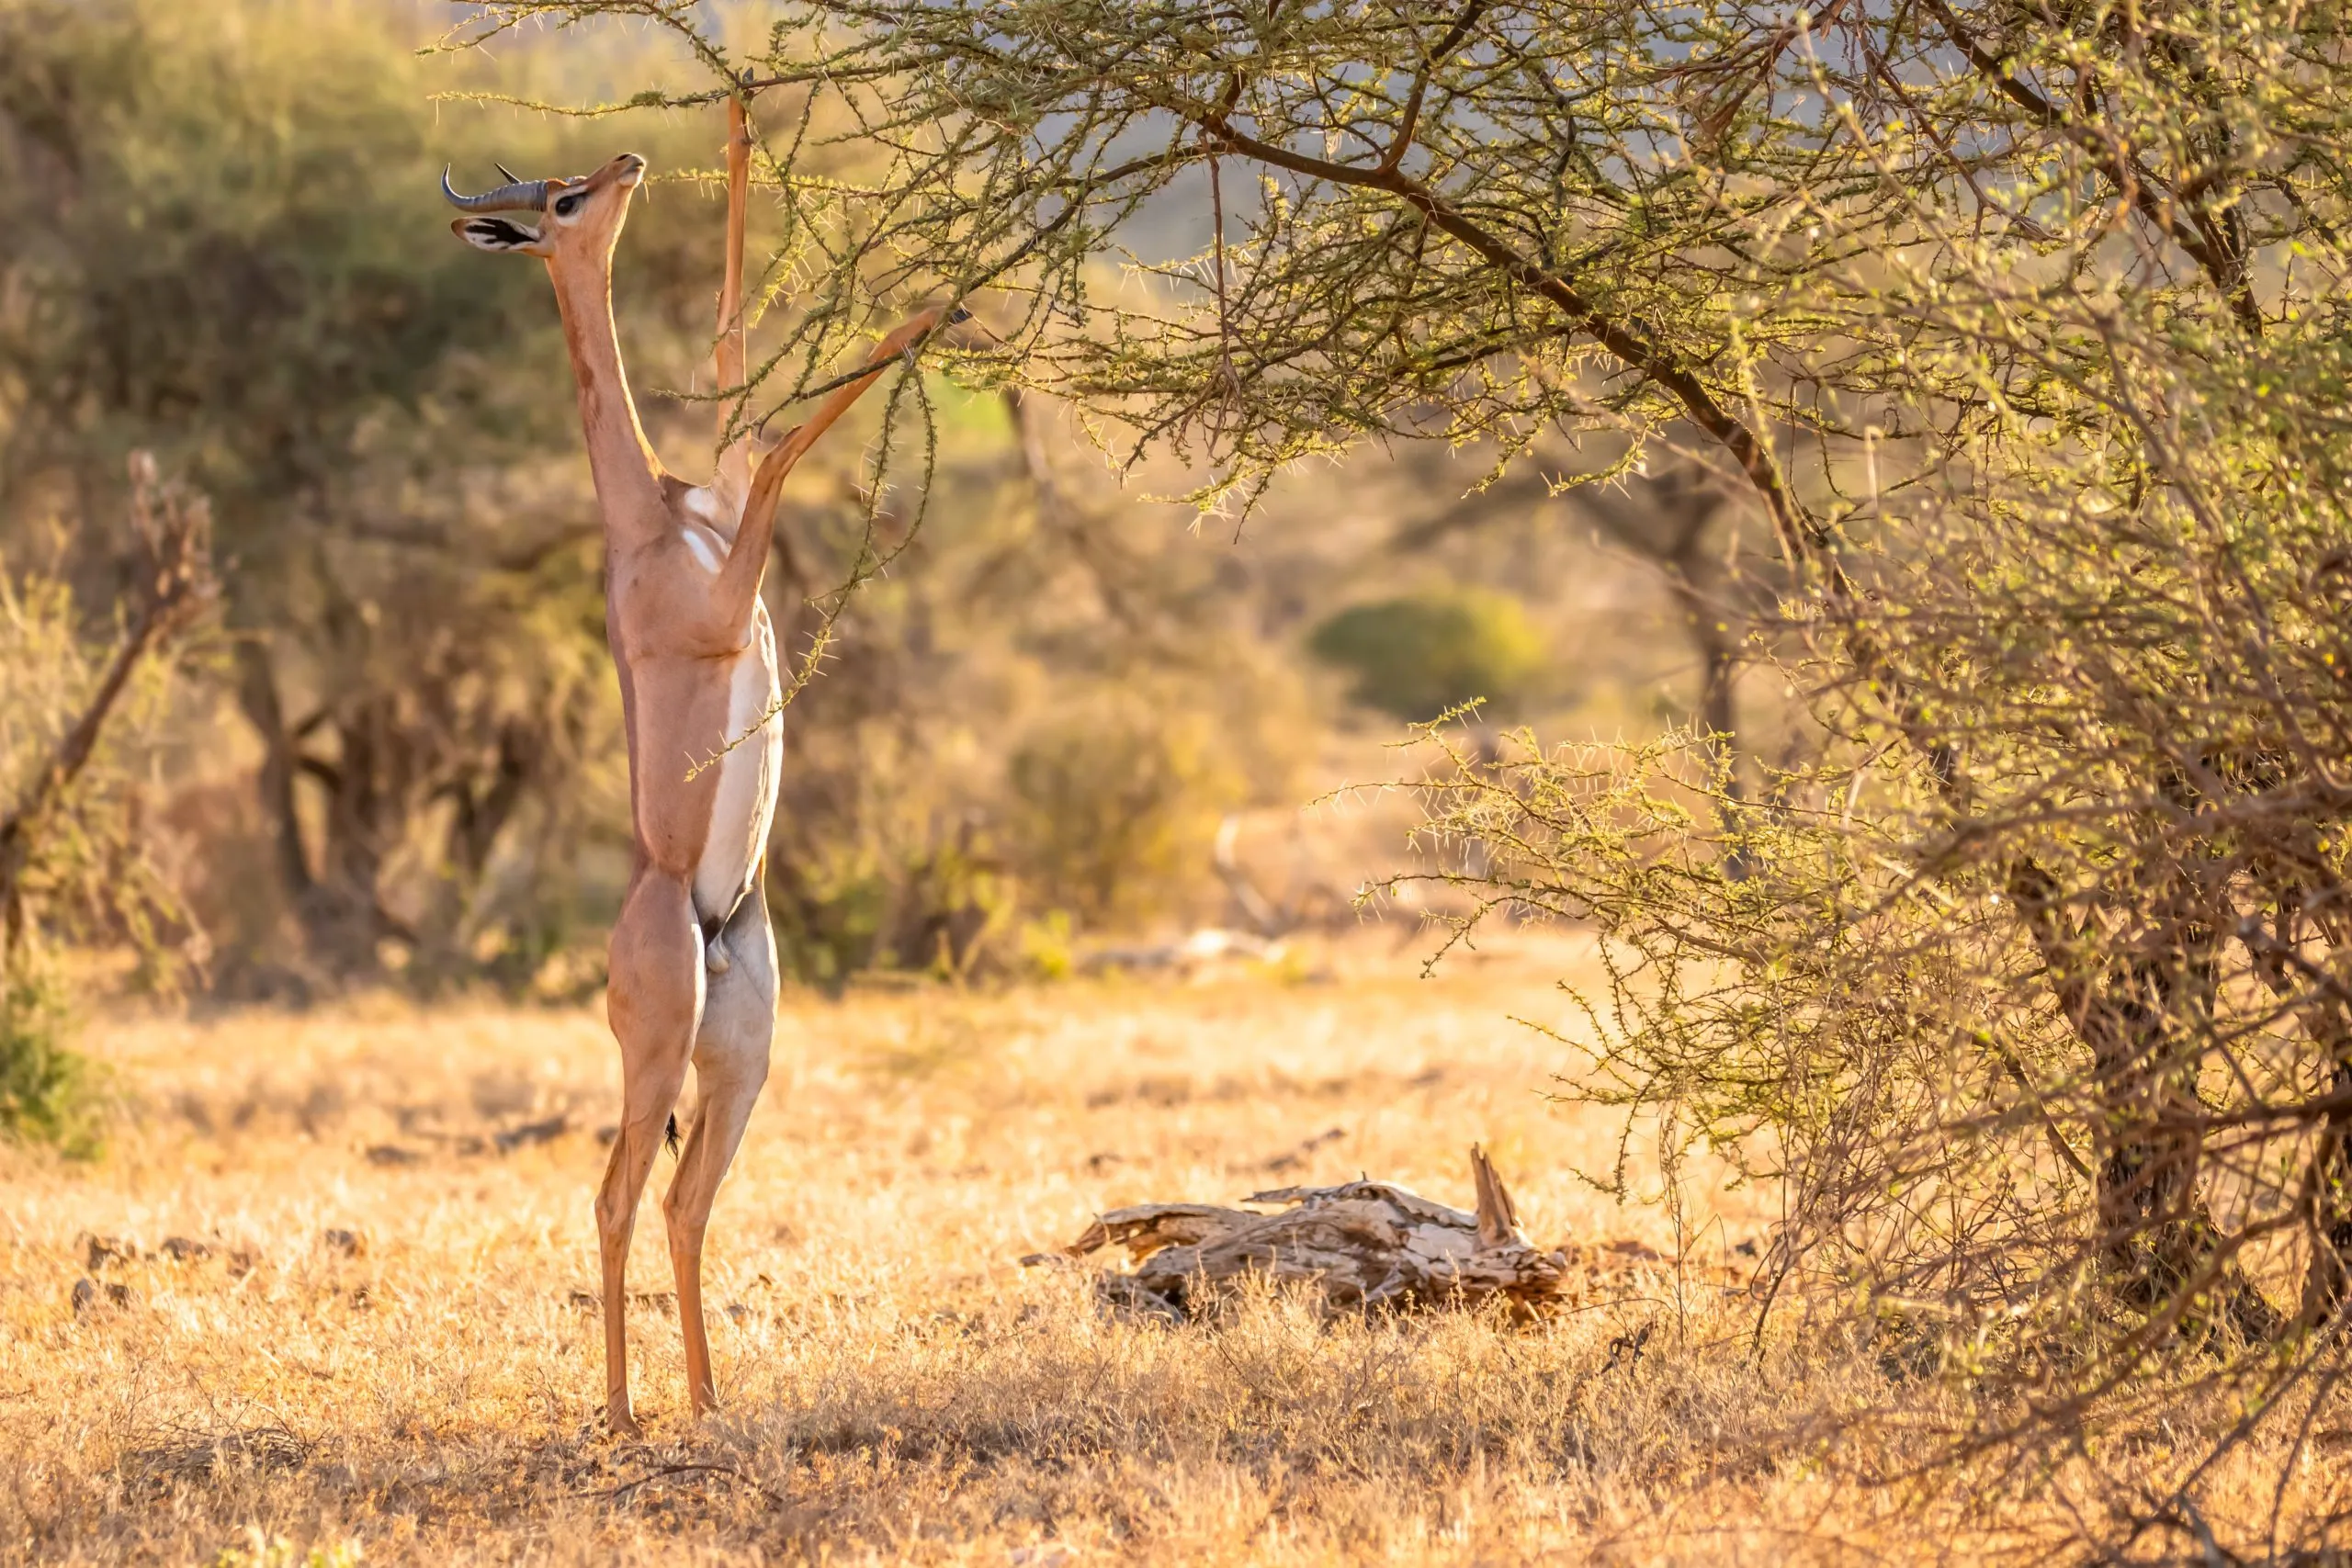 Gerenuk, Litocranius walleri aussi girafe gazelle, antilope à long cou, cou et membres longs et minces, debout sur les pattes arrières pendant l'alimentation des feuilles. Couleurs africaines du soir. Réserve nationale de Samburu, Kenya